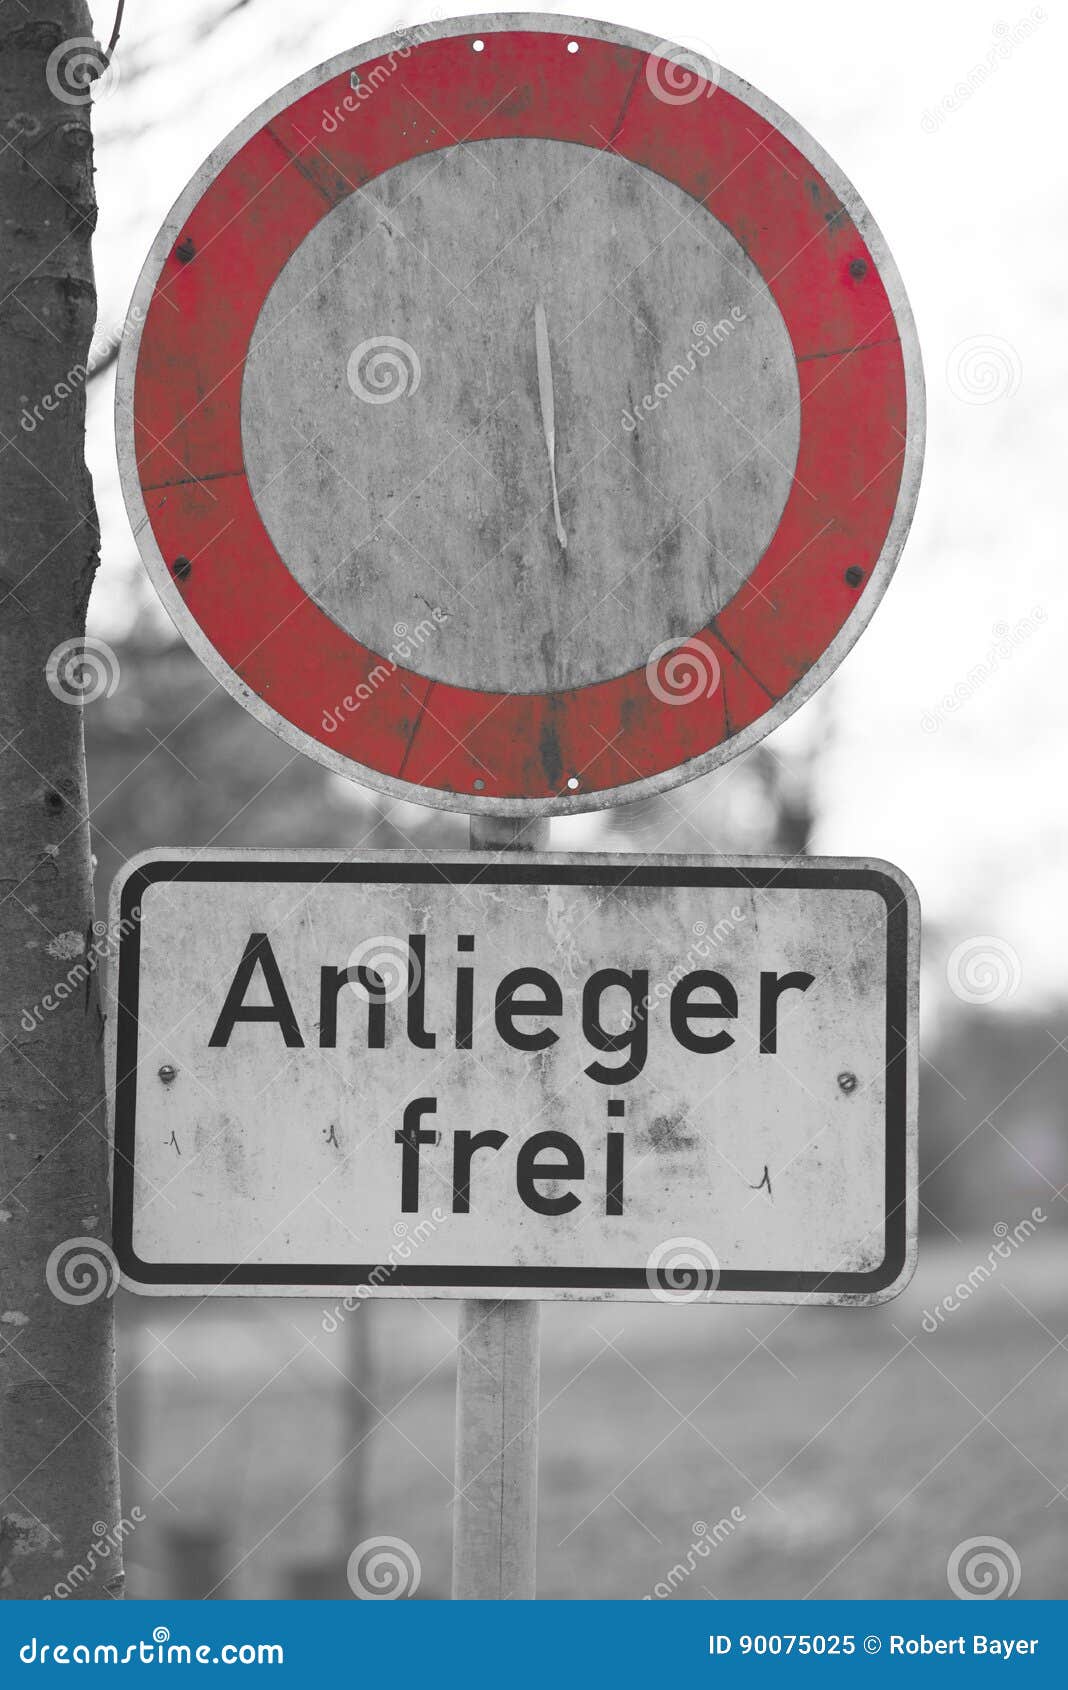 Deutsche Verkehrszeichen lizenzfreie Bilder, Stockfotos und